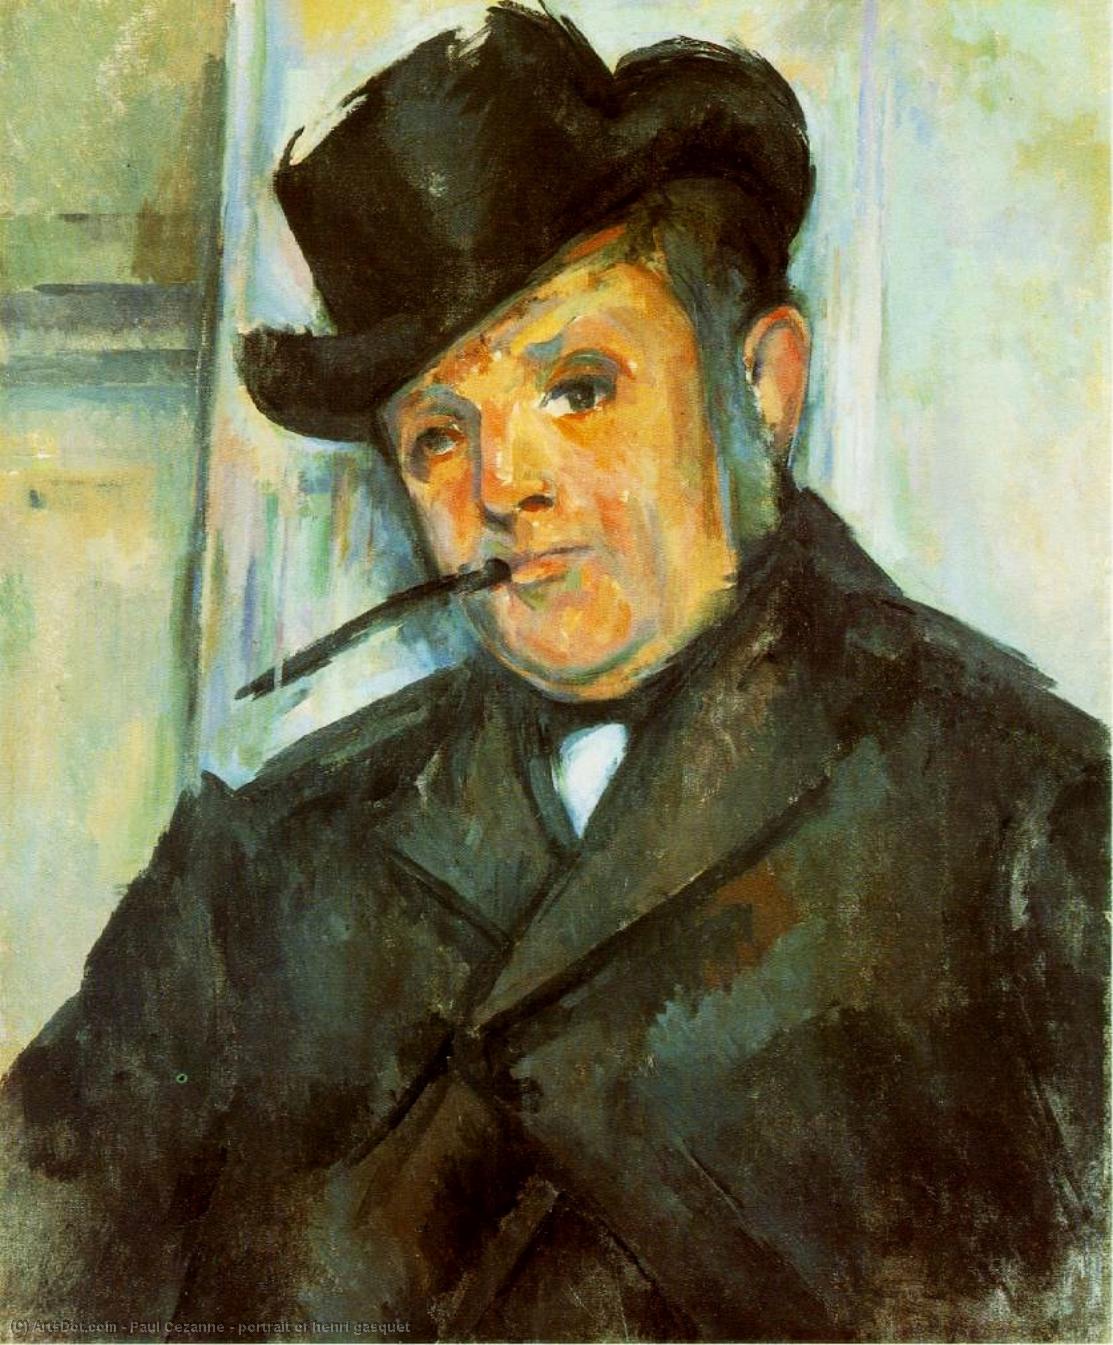 WikiOO.org - Encyclopedia of Fine Arts - Maleri, Artwork Paul Cezanne - portrait of henri gasquet